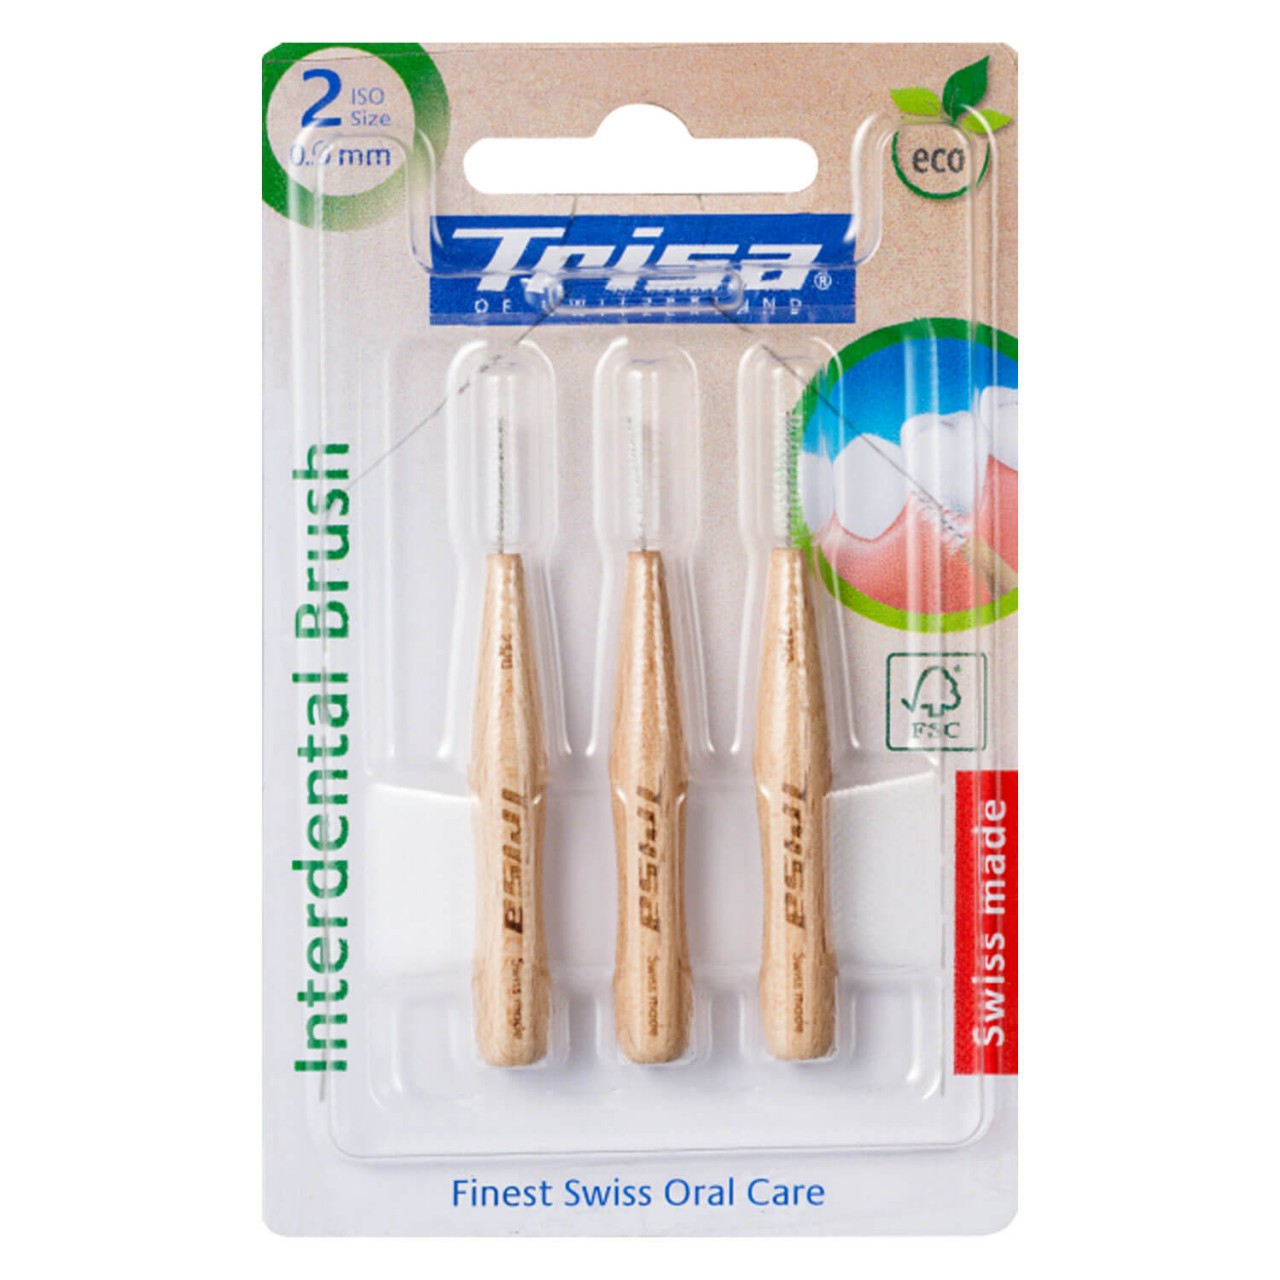 Trisa Oral Care - Interdental Brush Holz 0.9mm von Trisa of Switzerland